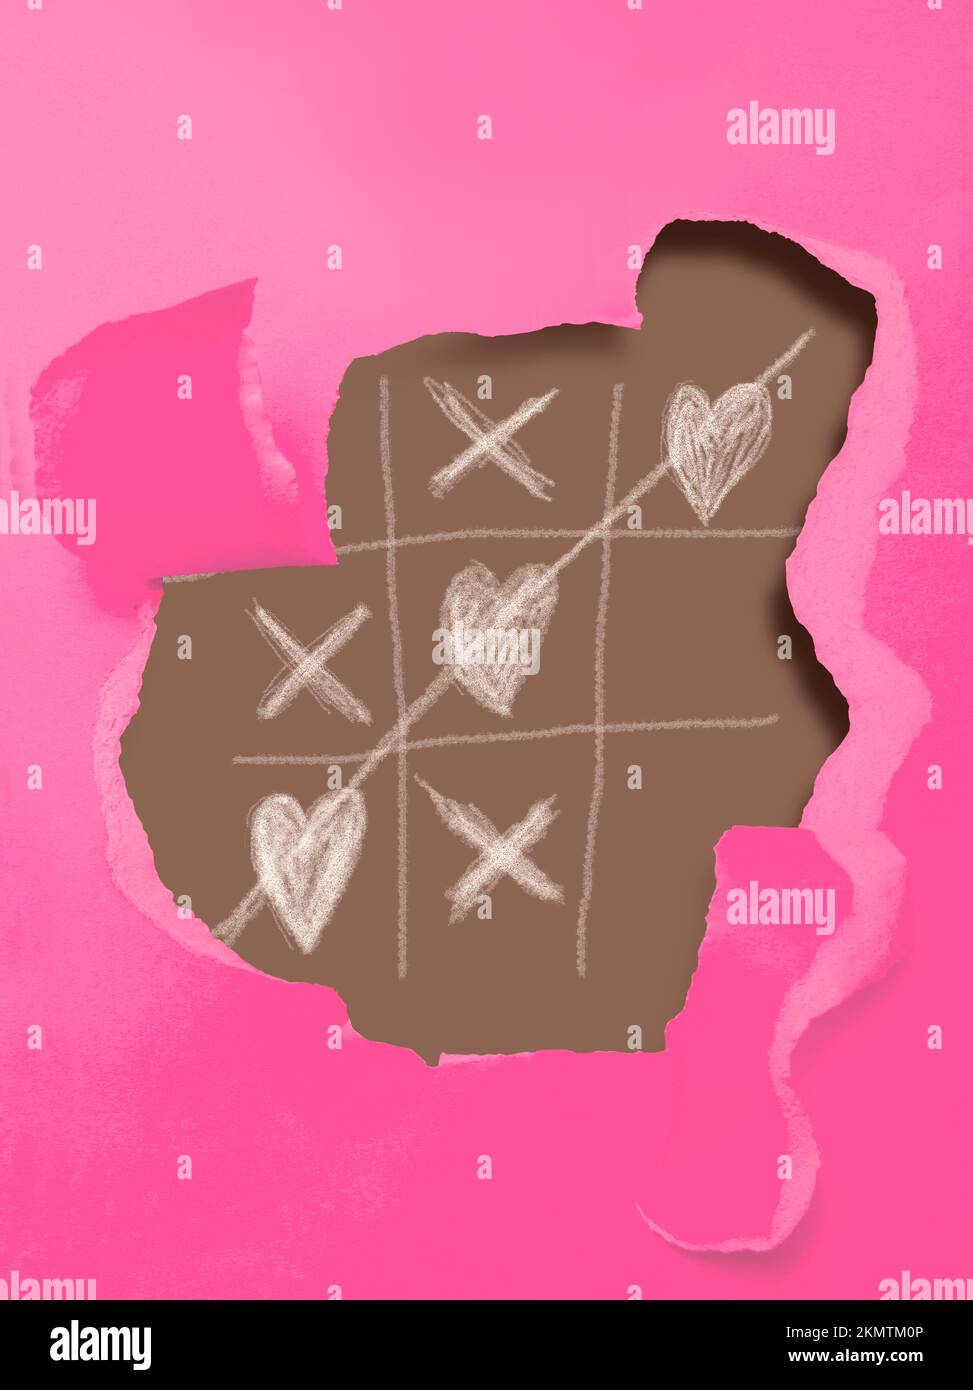 Kreatives Stillleben-Kunstwerk auf einer zerrissenen rosafarbenen Karte mit einem Spielbrett aus nought Herzen und Kreuzen. Spiele der Liebe Stockfoto